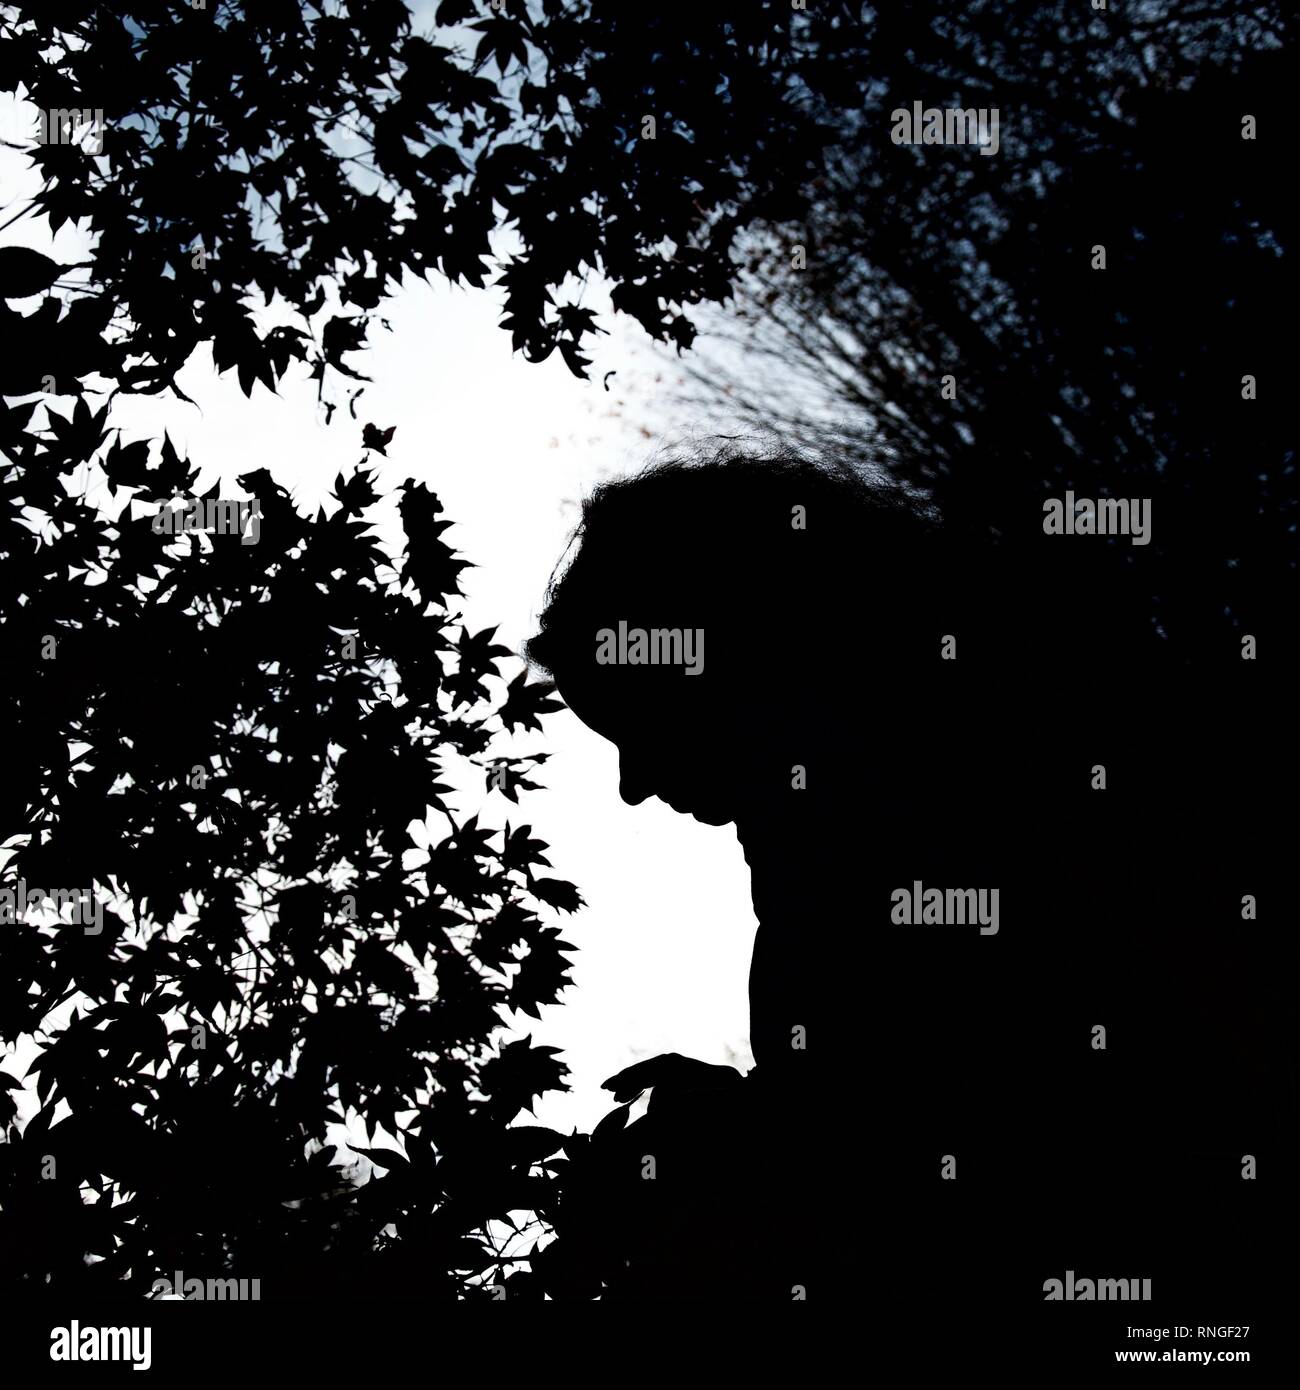 Silhouette eines langhaarigen weiblichen Profil von klar unterschieden Ahorn Blätter an einem Baum gegen den Himmel umgeben Stockfoto